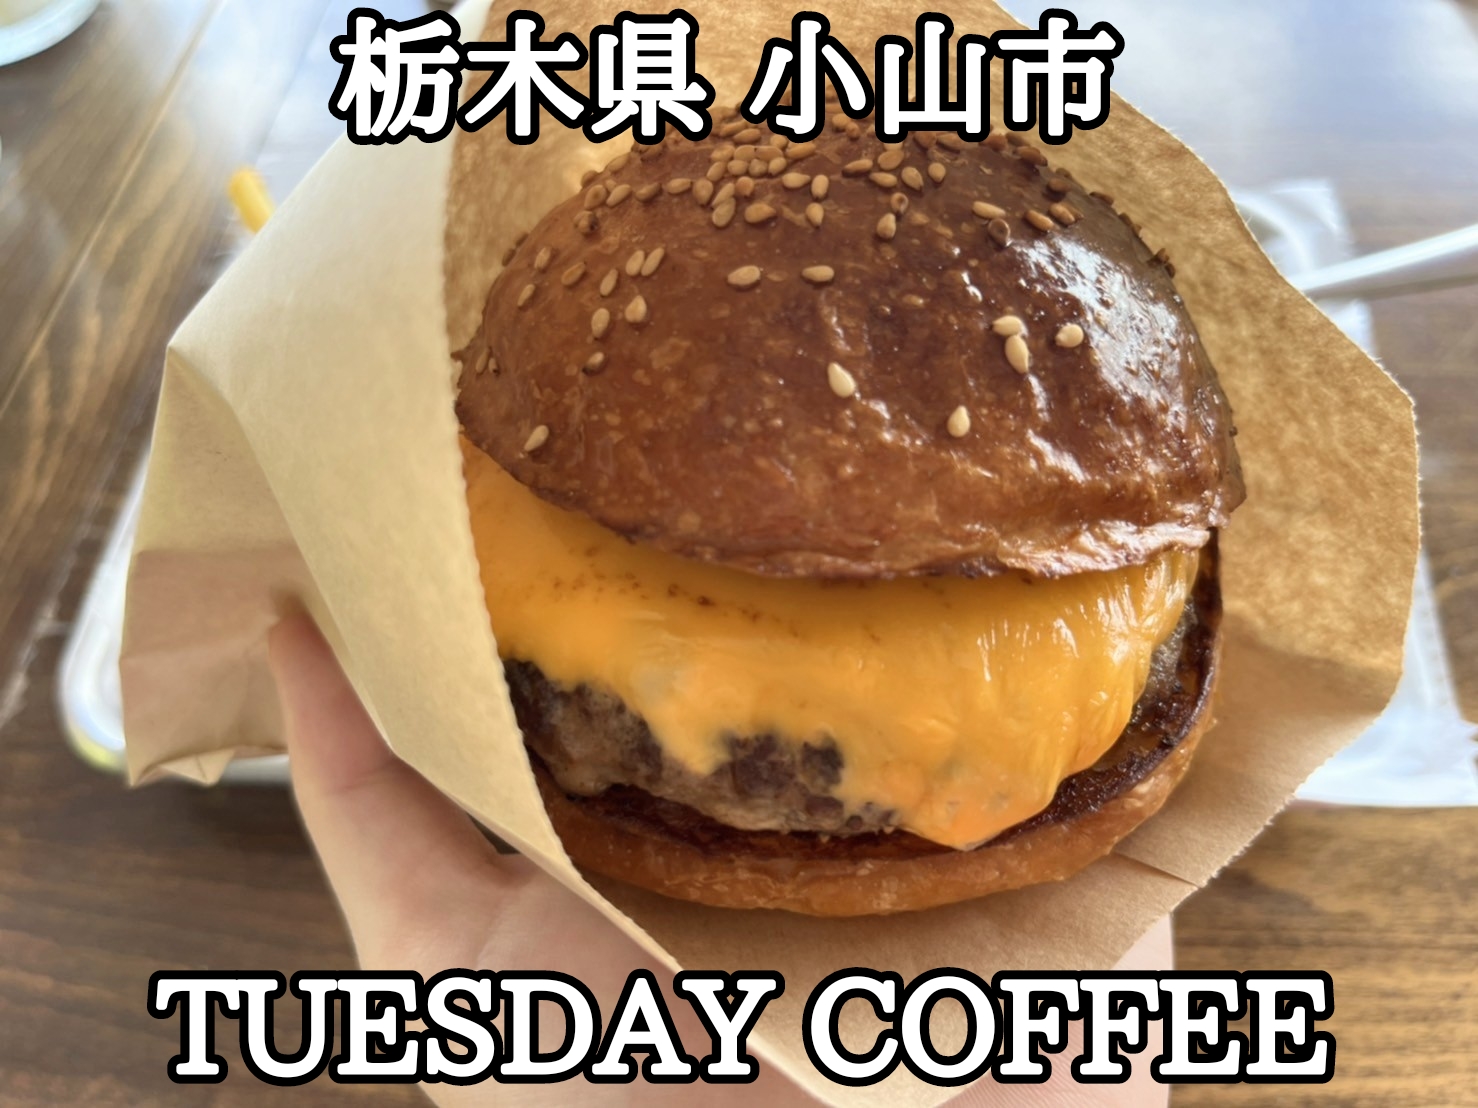 【栃木県】【小山市】「TUESDAY COFFEE」テラス席も在るアメリカンライクなカフェでチーズバーガーとICEキャラメルミルク